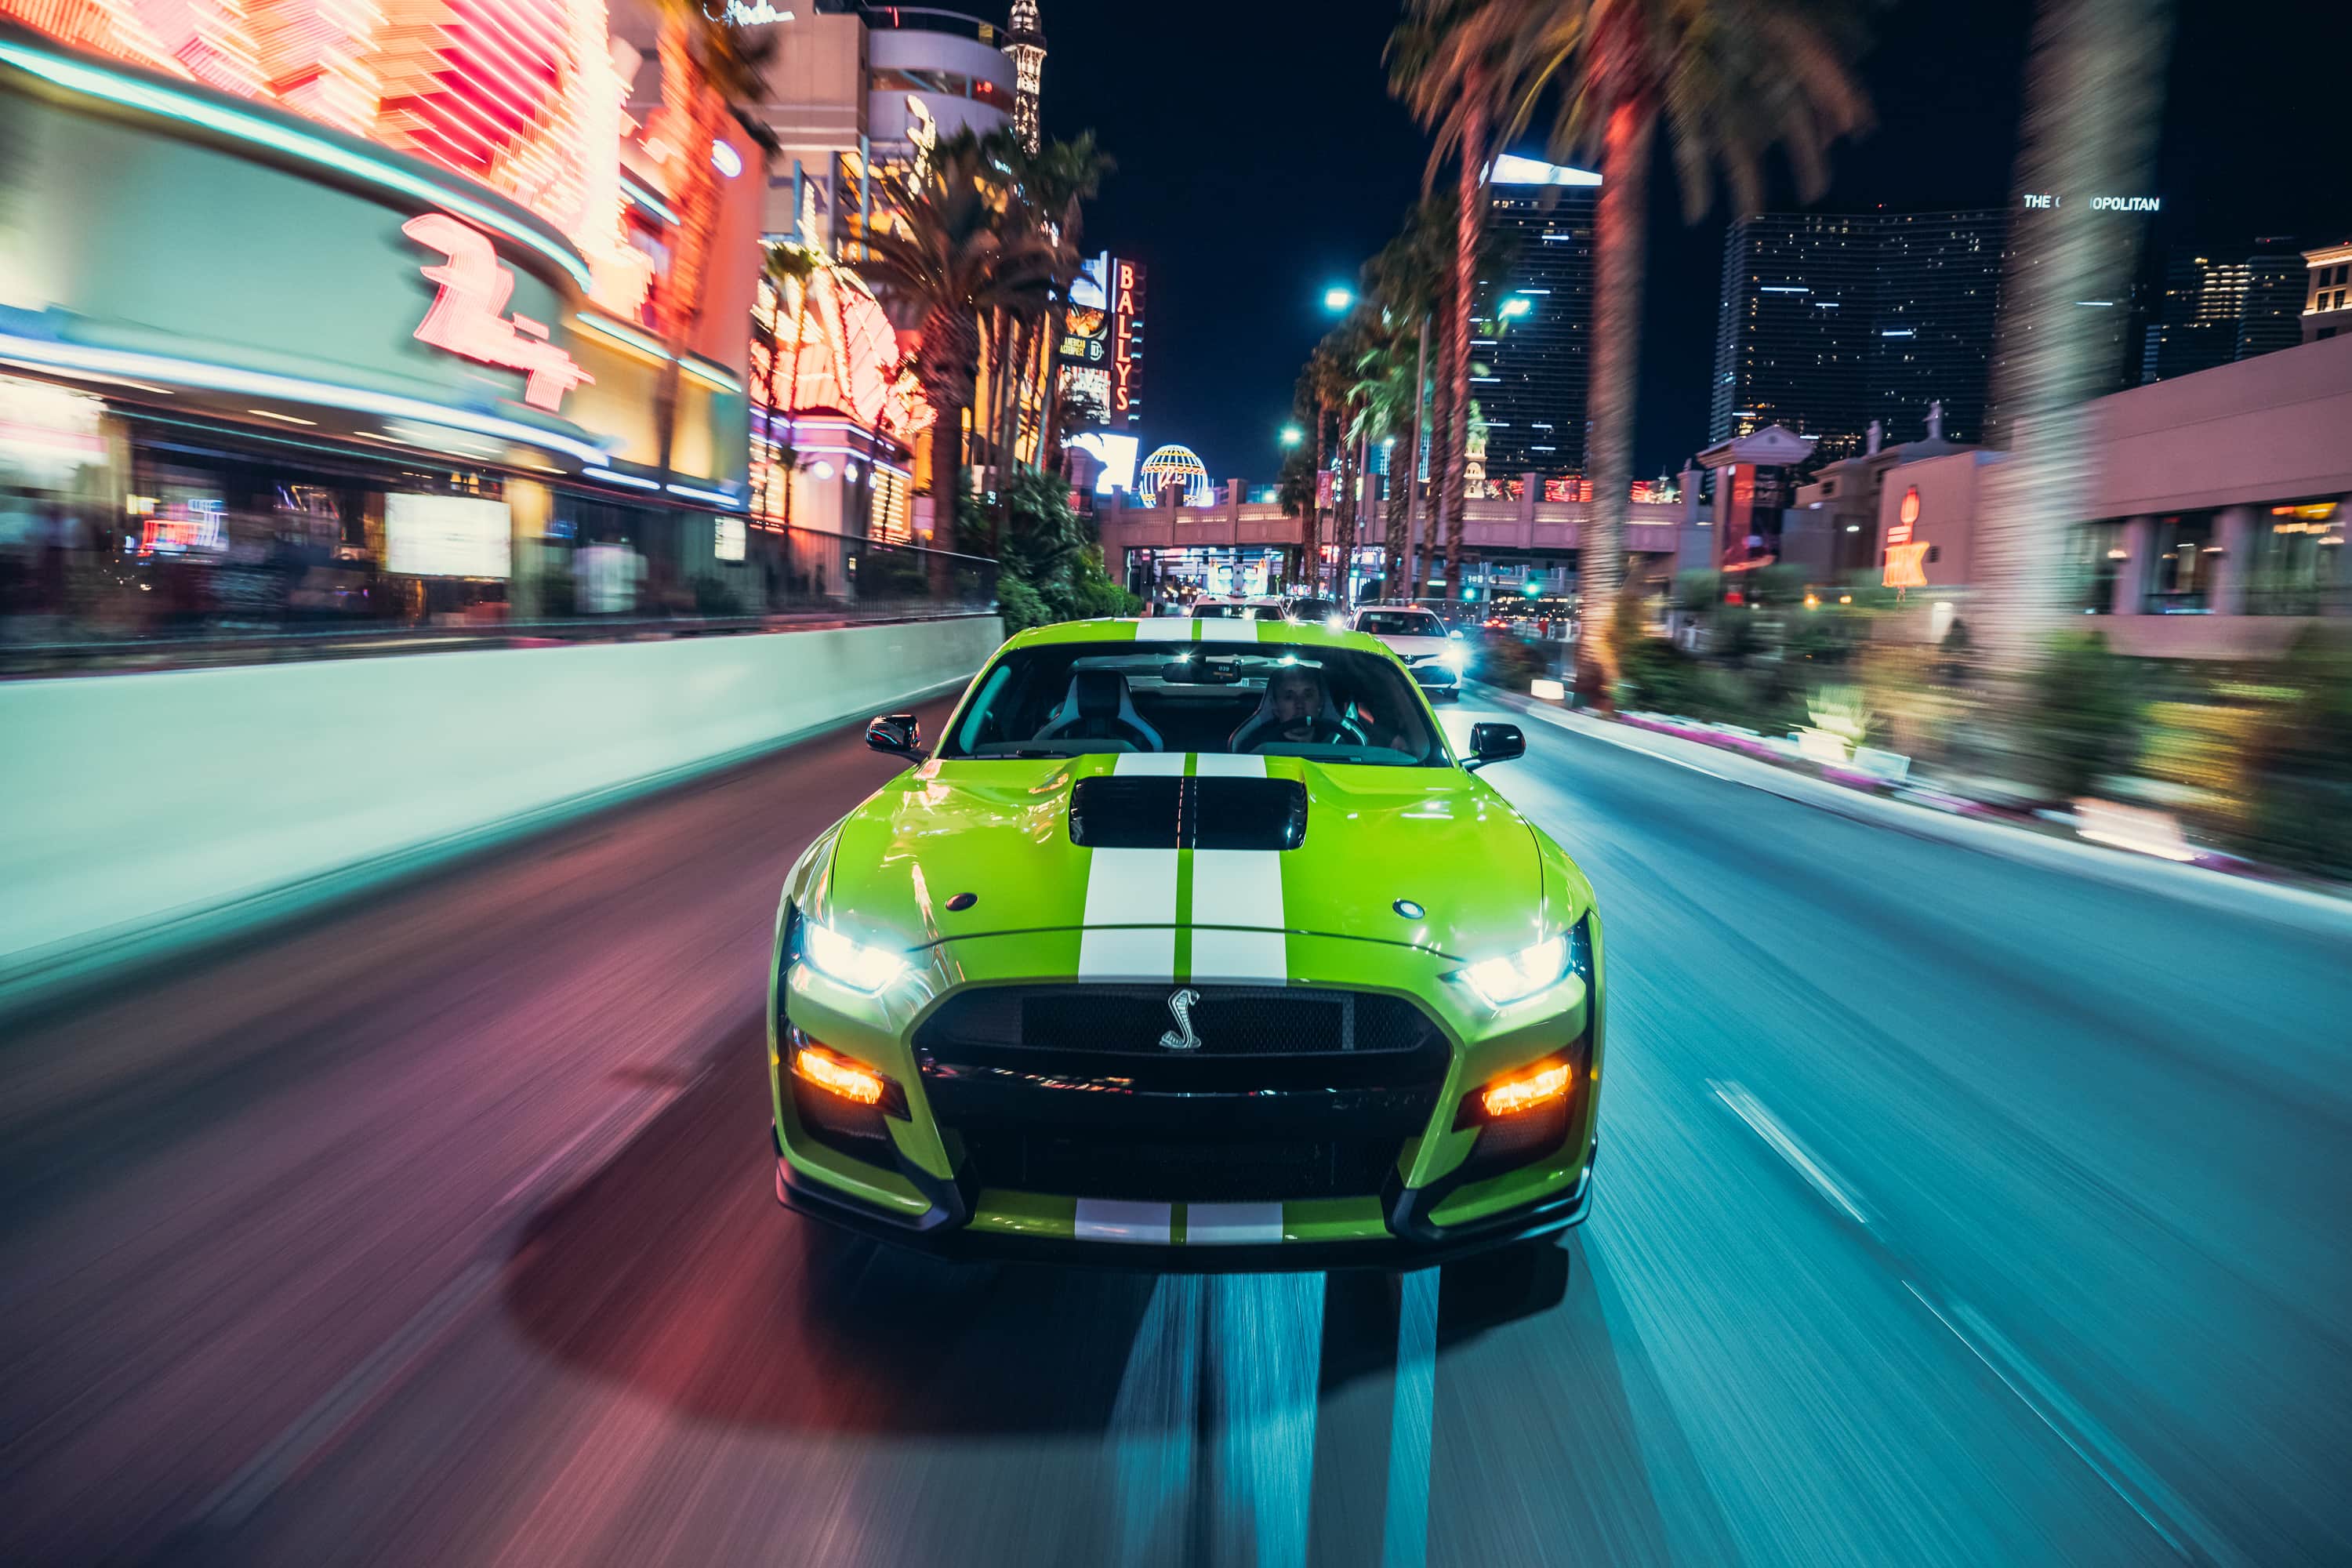 Салатовый Ford Mustang едет по ночной улице